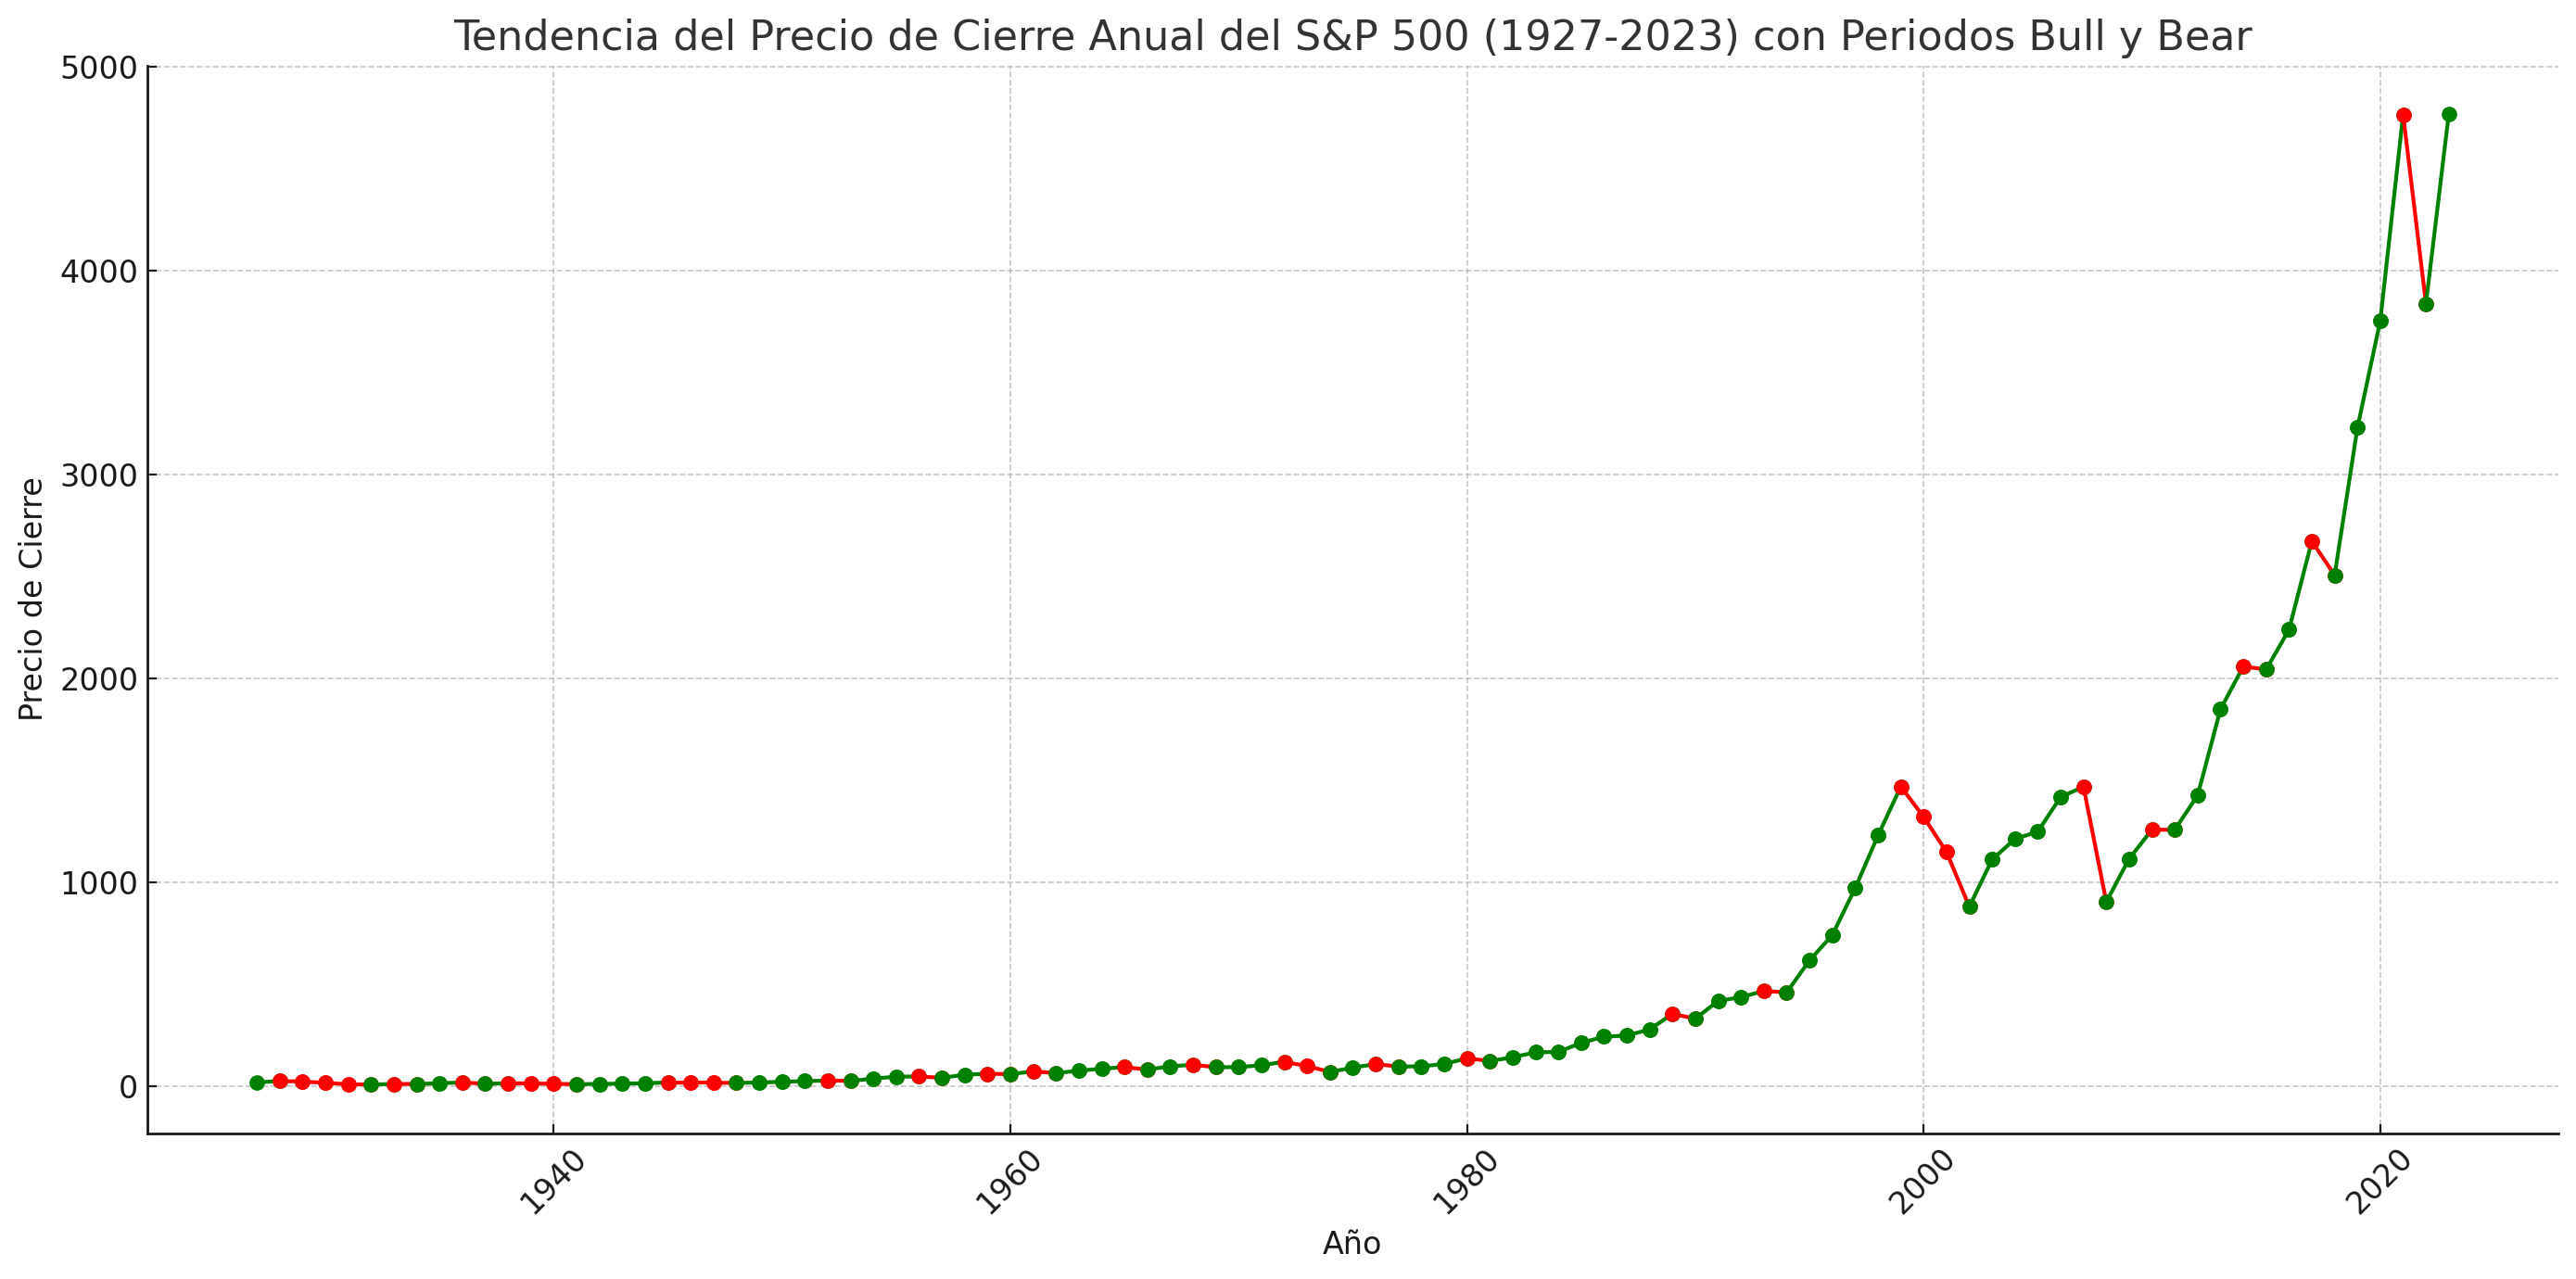 Tendencia del Precio de Cierre Anual del SP 500 con Periodos Bull y Bear